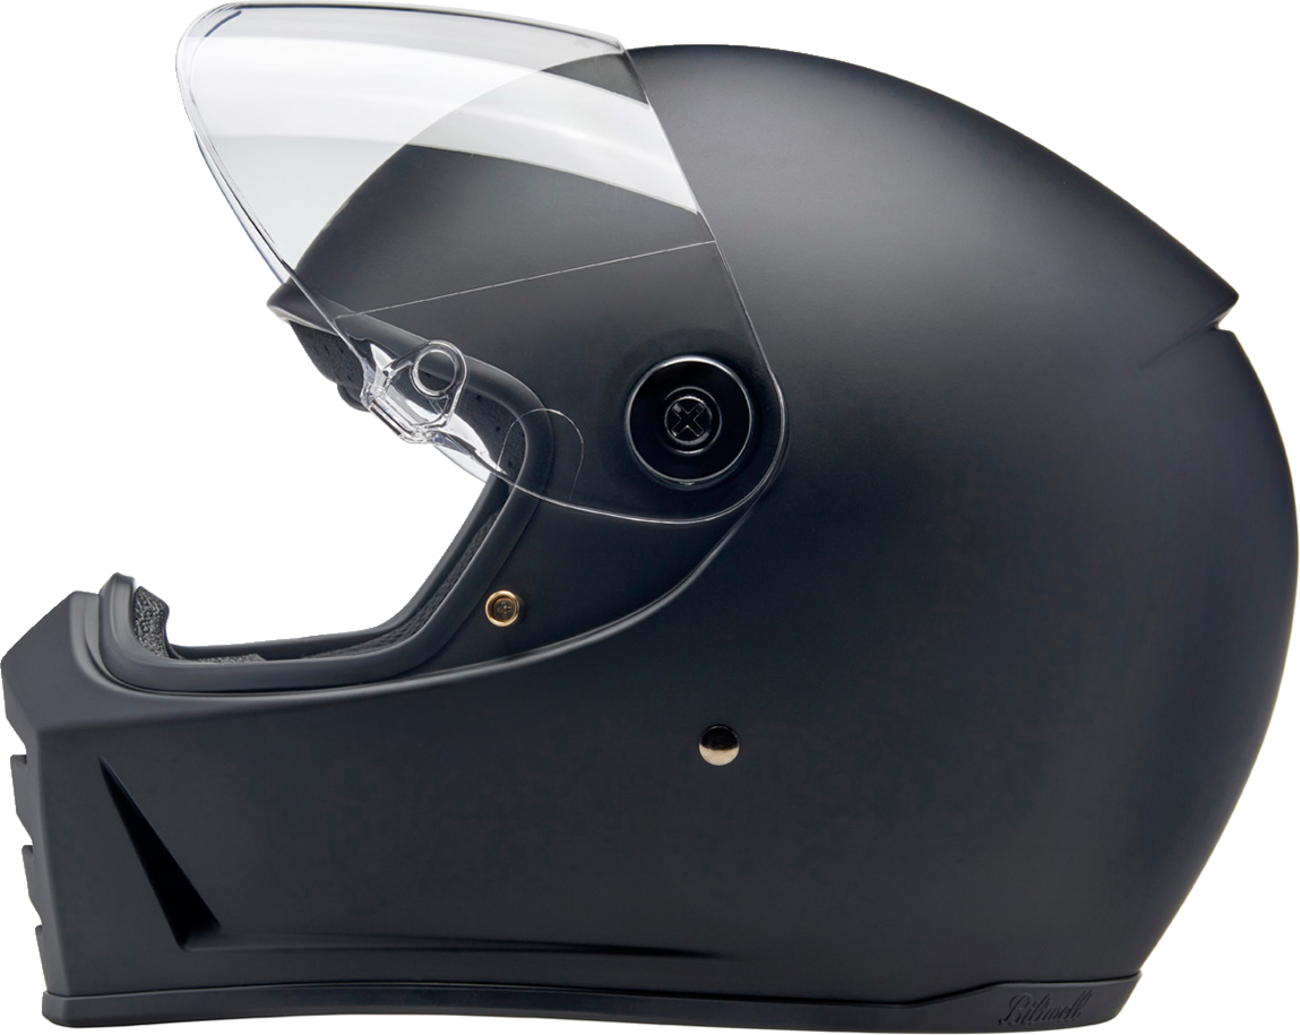 BILTWELL Lane Splitter Helmet - Flat Black - 2XL 1004-201-506